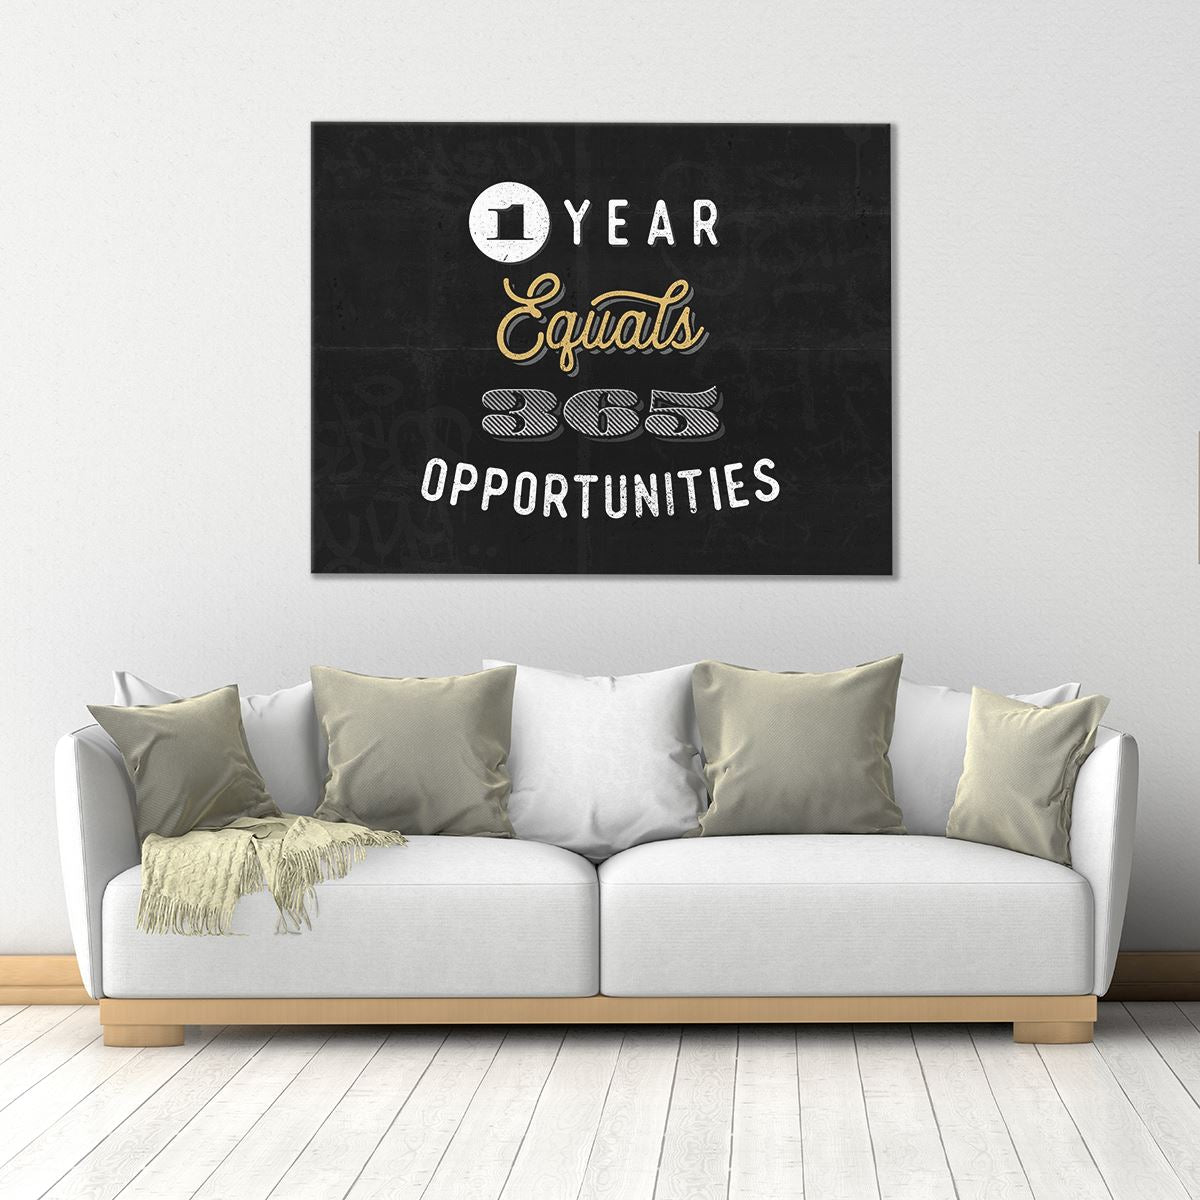 365 Opportunities